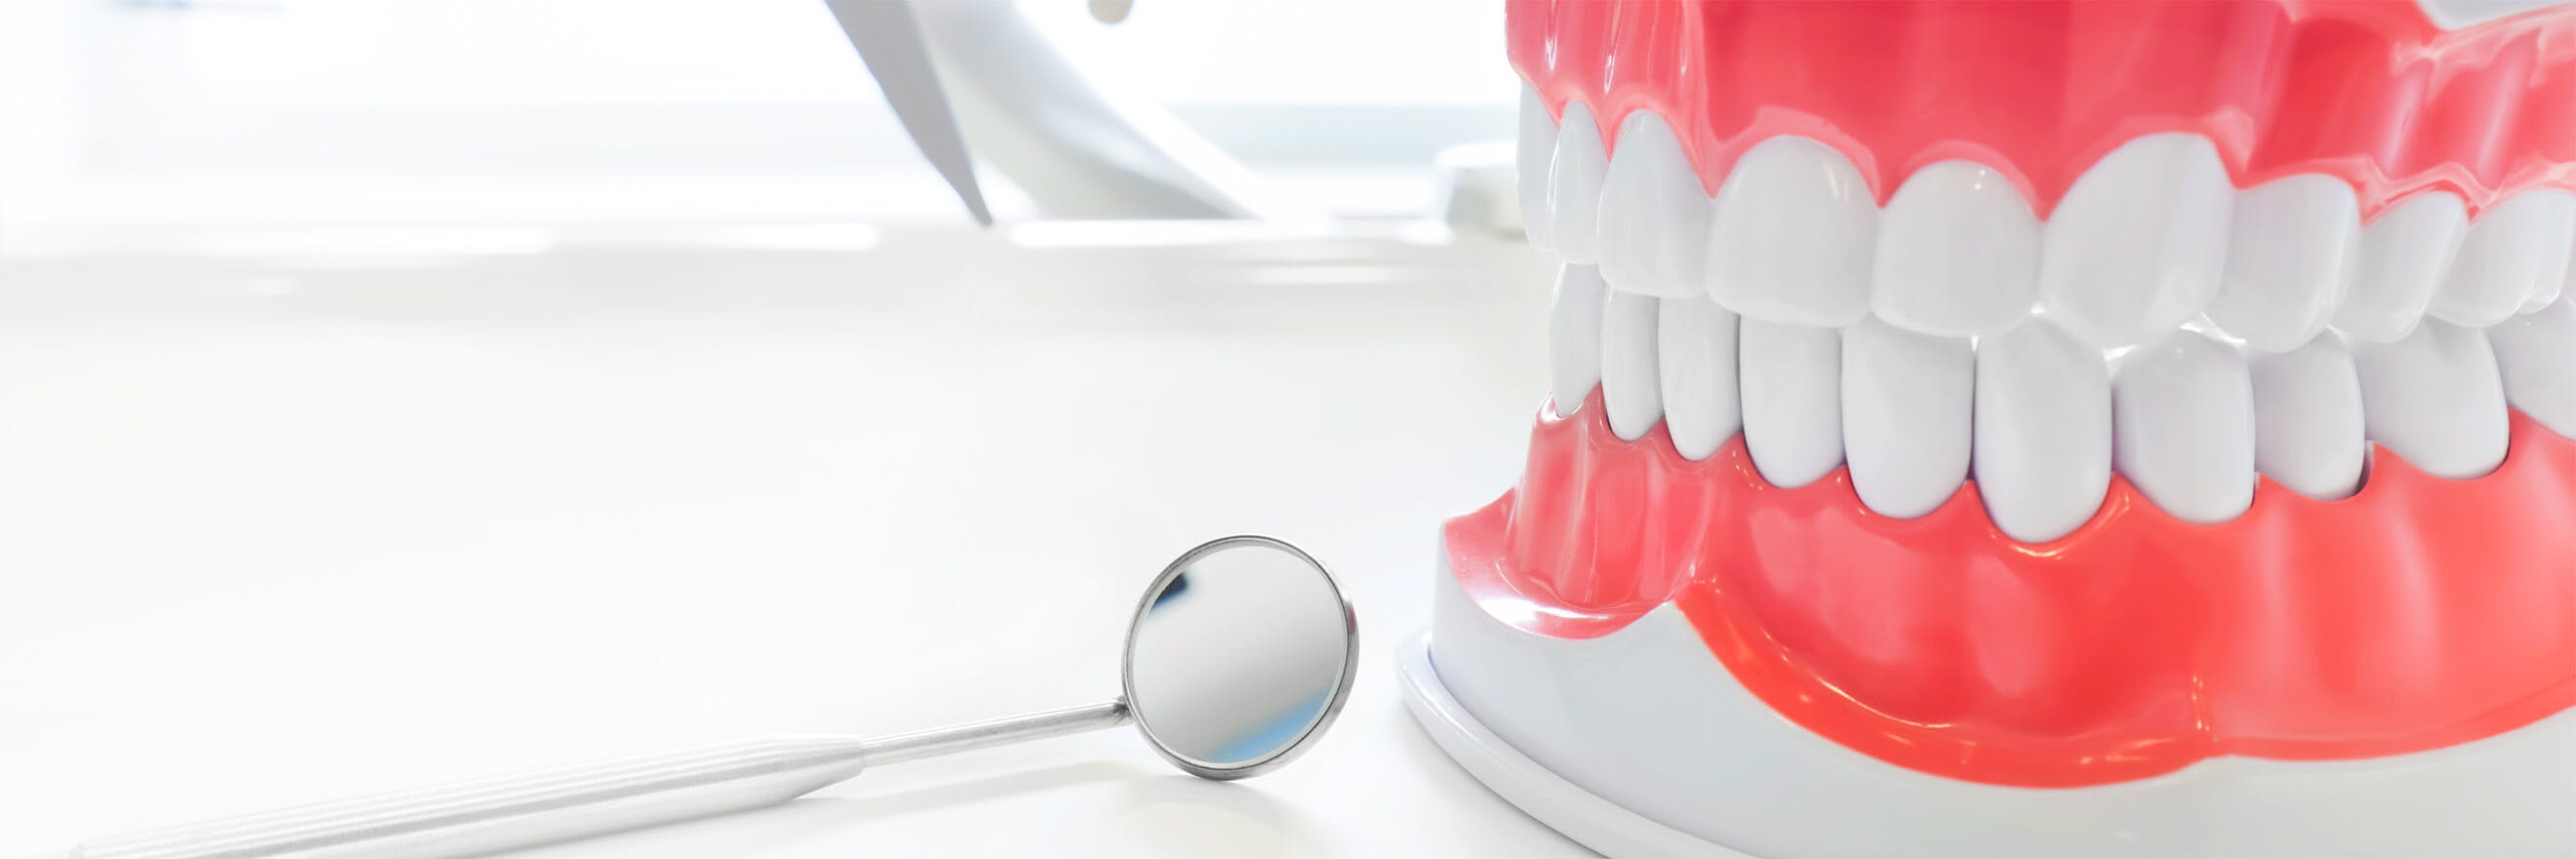 Pilnas dantų modelis su odontologo veidrodėliu